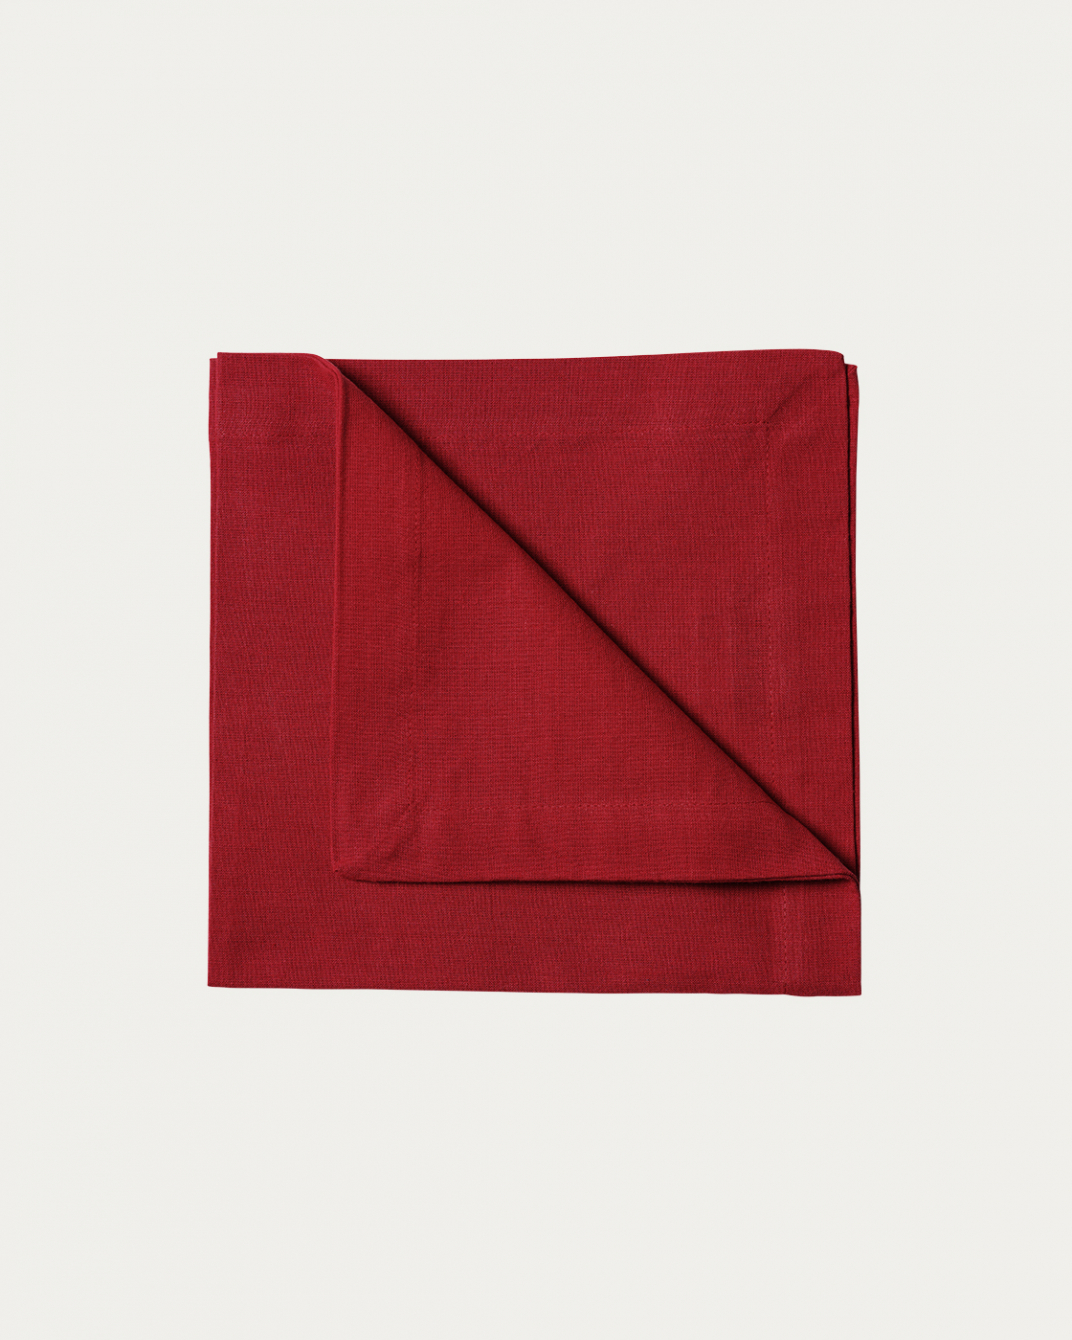 Produktbild rot ROBERT Serviette aus weicher Baumwolle von LINUM DESIGN. Größe 45x45 cm und in 4er-Pack verkauft.